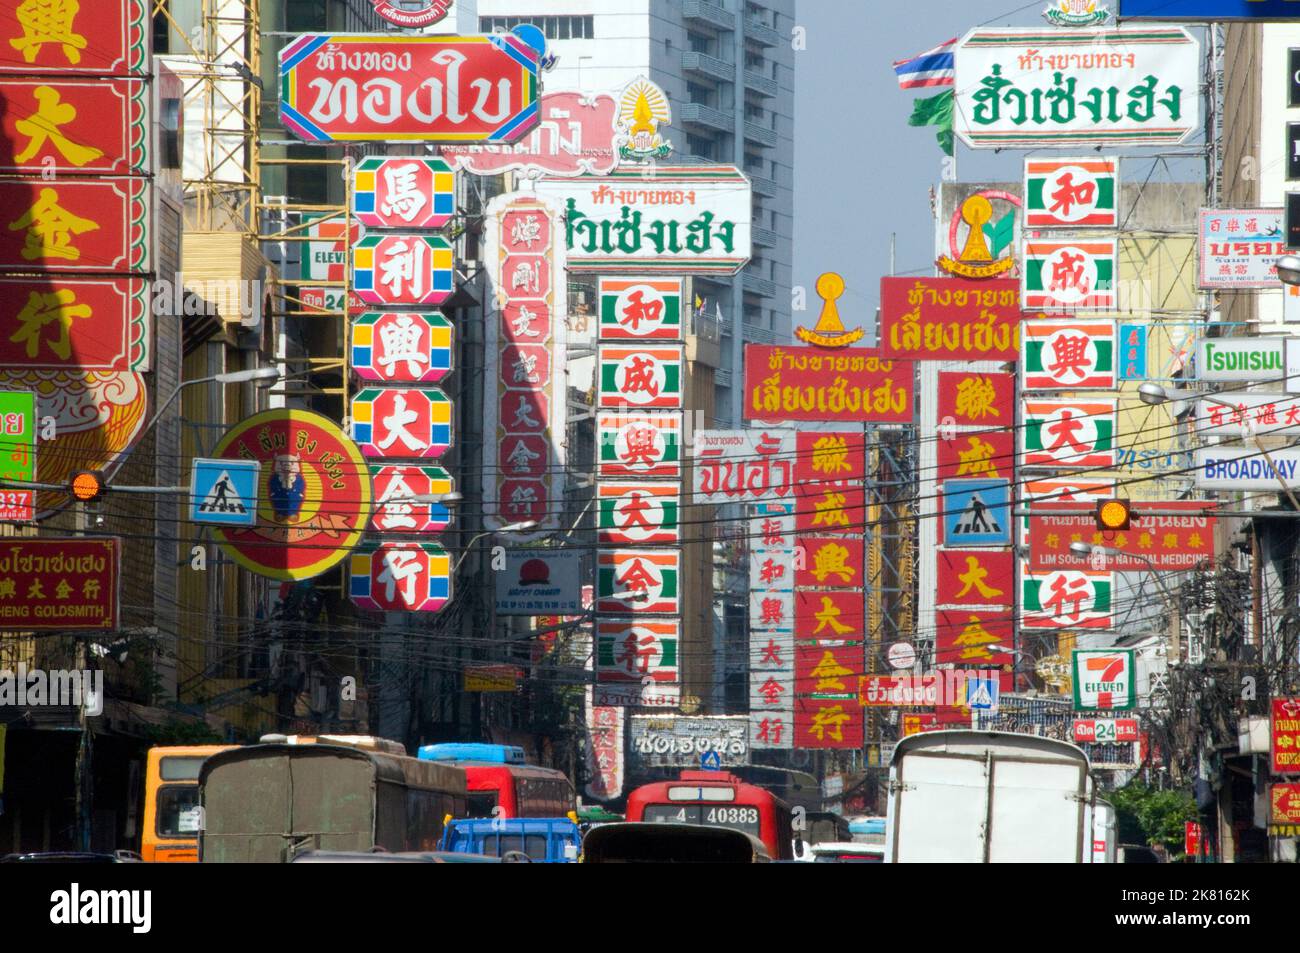 Thailandia: Traffico e indicazioni su Yaowarat Road, Chinatown, Bangkok (2008). La Chinatown di Bangkok è una delle più grandi Chinatown del mondo. Fu fondata nel 1782 quando la città fu fondata come capitale del regno di Rattanakosin, e fu la sede della popolazione cinese, principalmente immigrata teocheo, che divenne presto il gruppo etnico dominante della città. Foto Stock